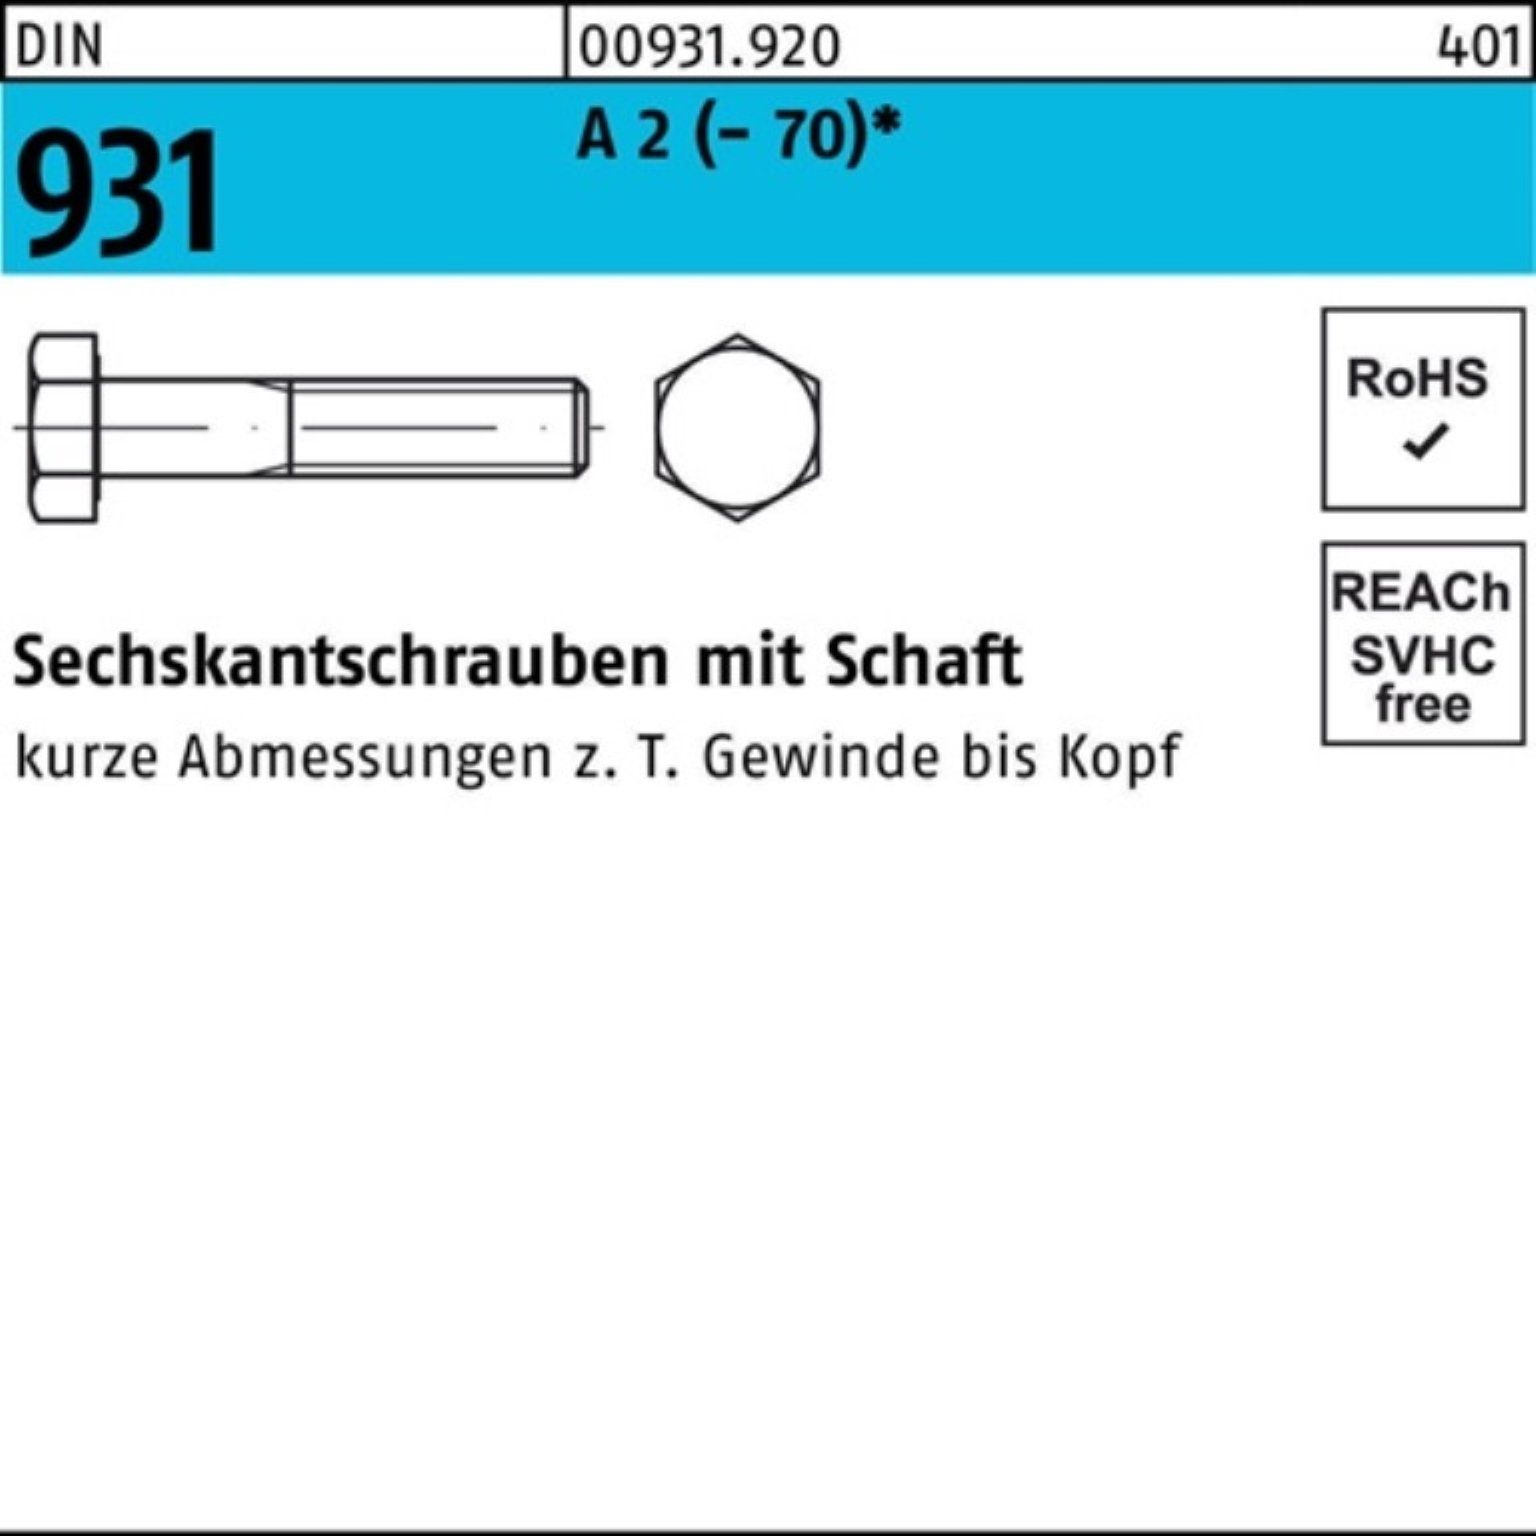 A Reyher Pack Sechskantschraube (70) 100er Stüc Schaft 931 M20x 1 2 Sechskantschraube 70 DIN